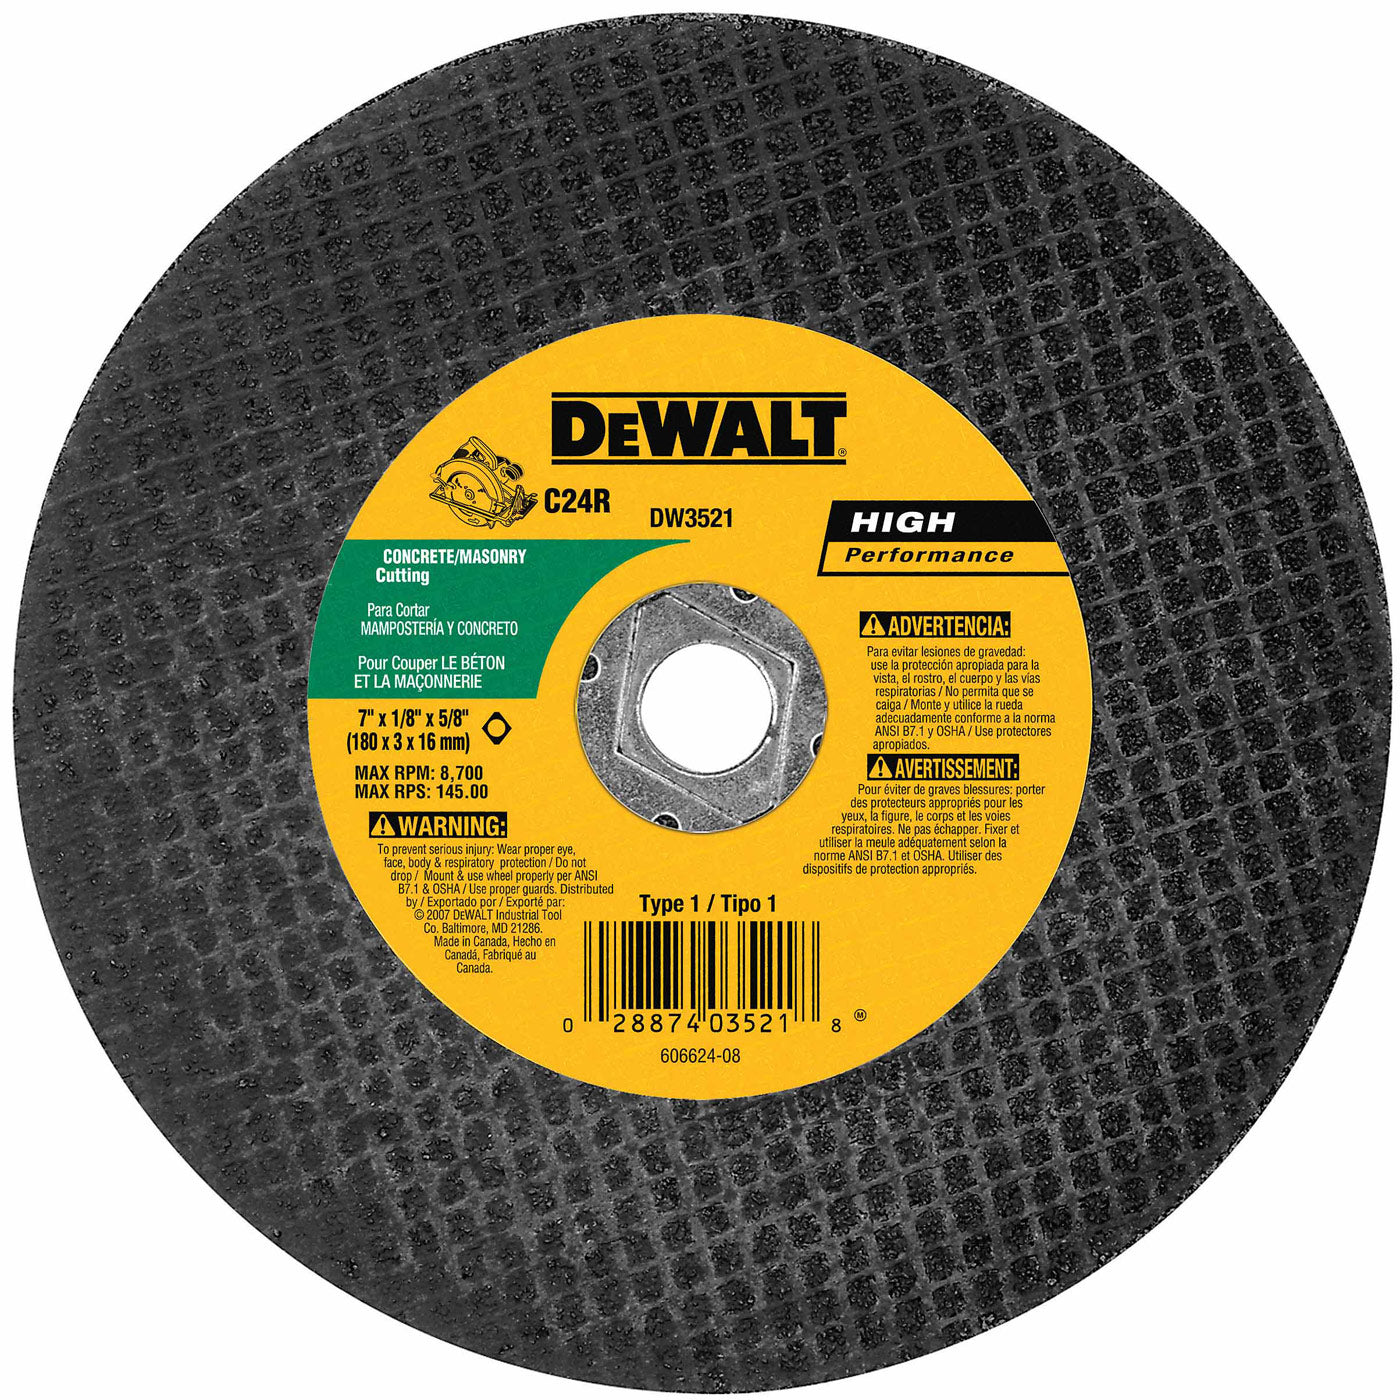 DeWalt DW3521 7" x 1/8" Concrete/Masonry Abrasive Saw Blade - Bulk